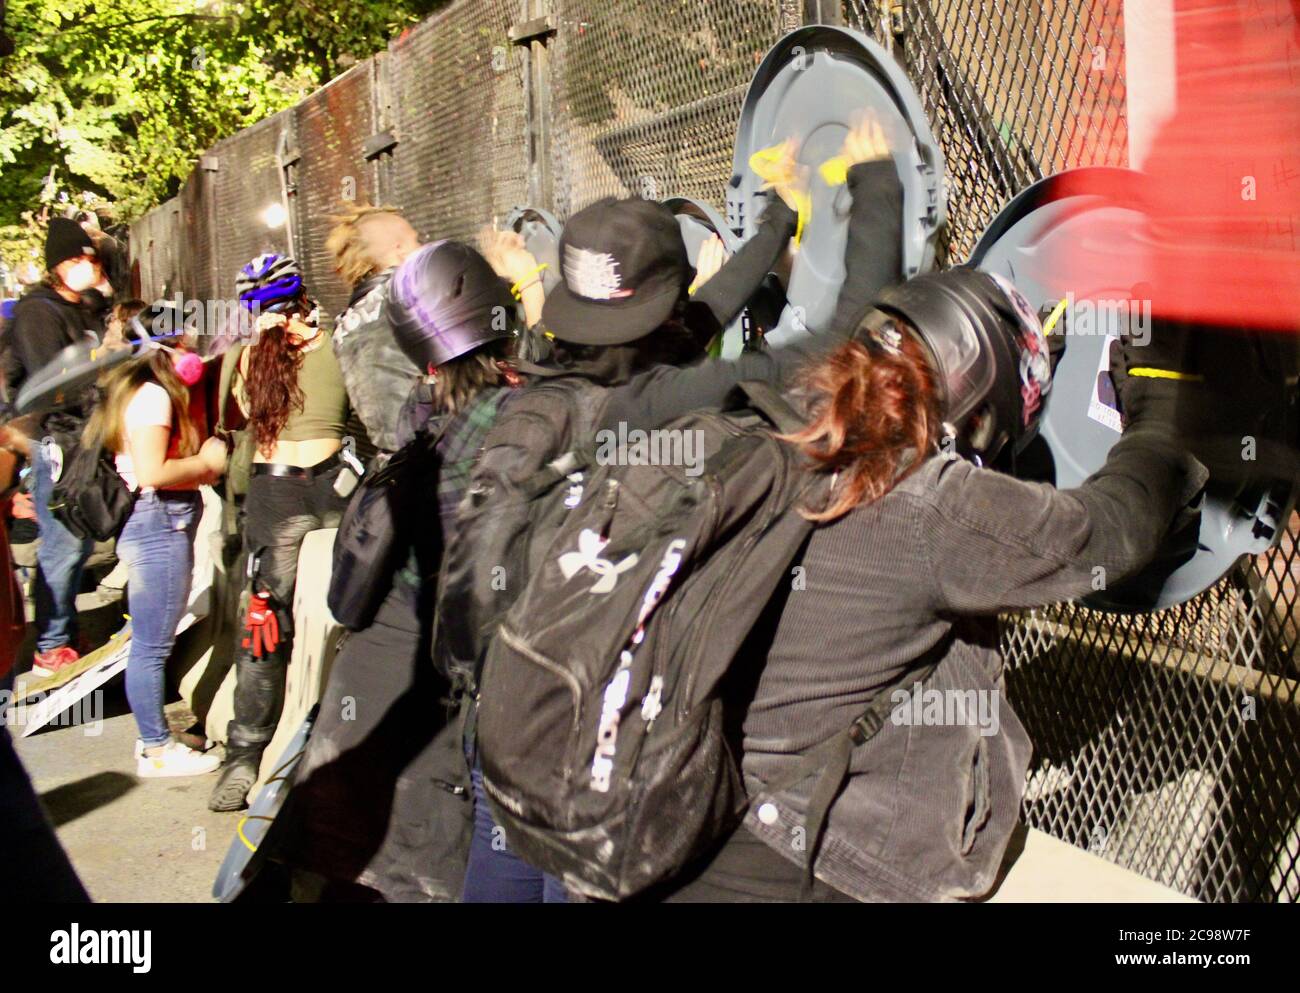 Portland, Oregon, USA. Juli 2020. Portland-Proteste: Kleine Gruppe von Protestierenden, viele identifizieren sich als Anarchisten, schlagen auf den Zaun, den die Feds errichtet haben, um sie vom Gerichtsgebäude fernzuhalten, schreien, ing 'FEDS GO homeâ Credit: Amy Katz/ZUMA Wire/Alamy Live News Stockfoto